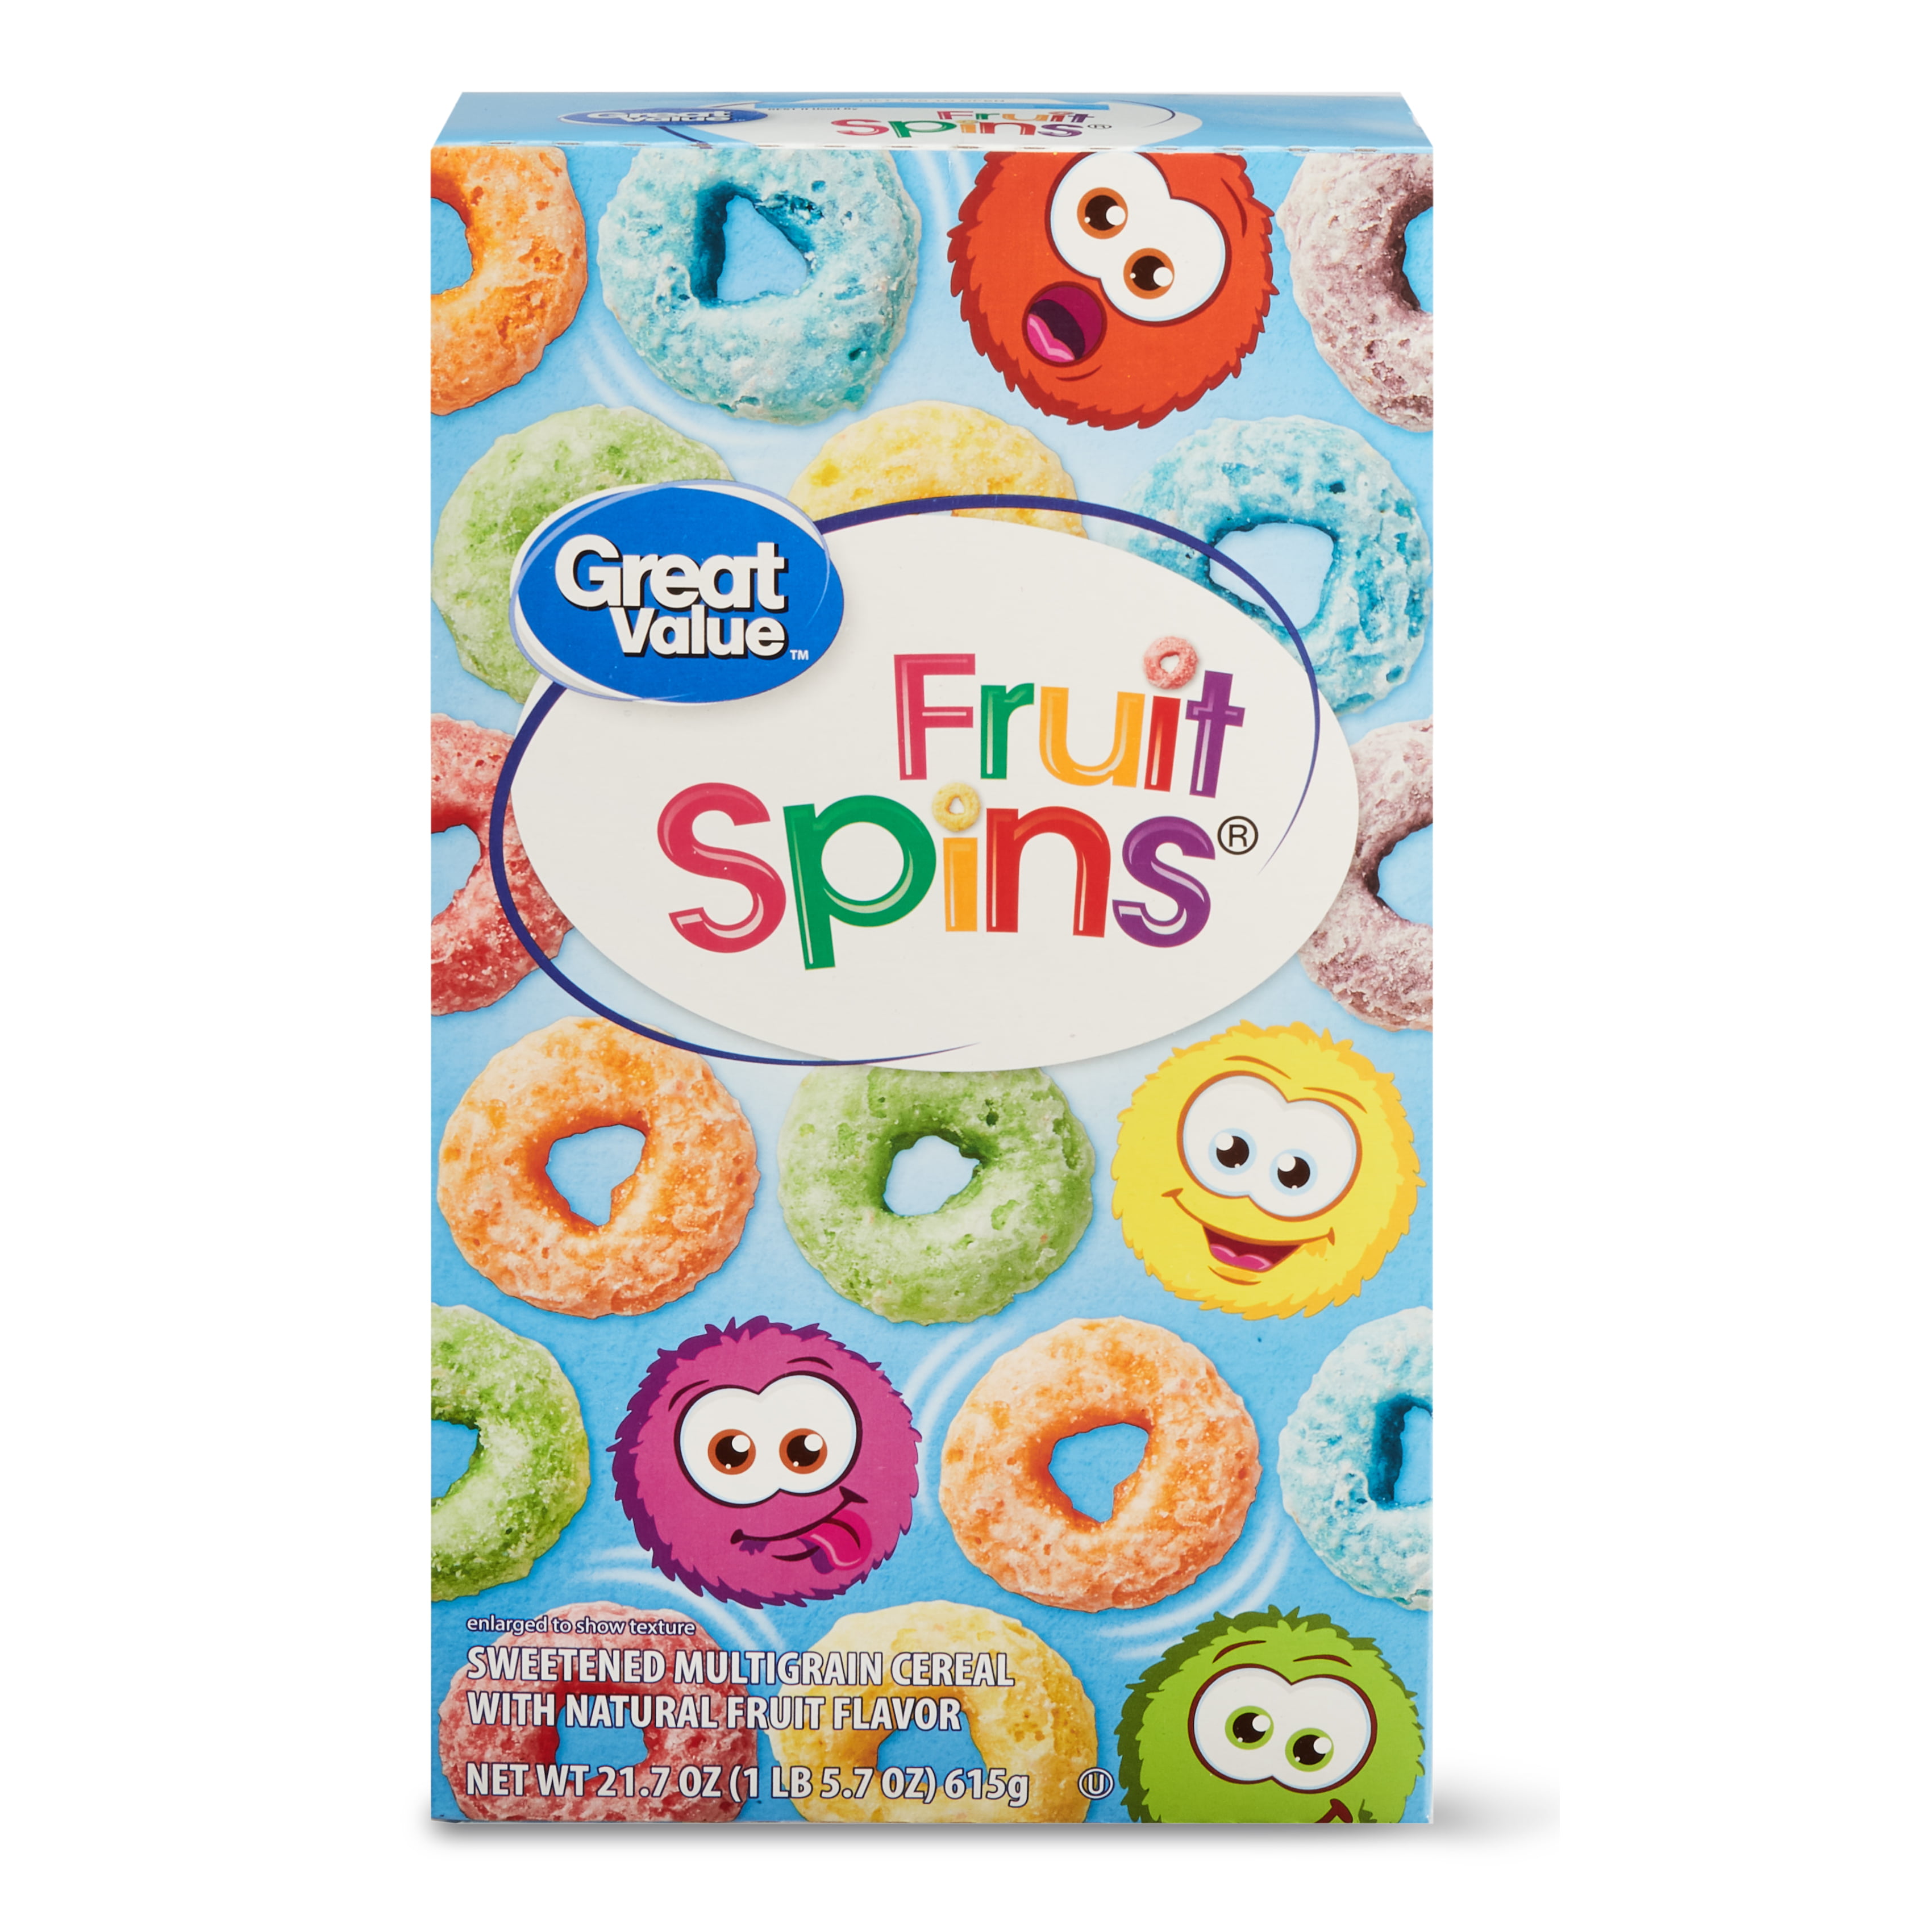 Fruit Spins